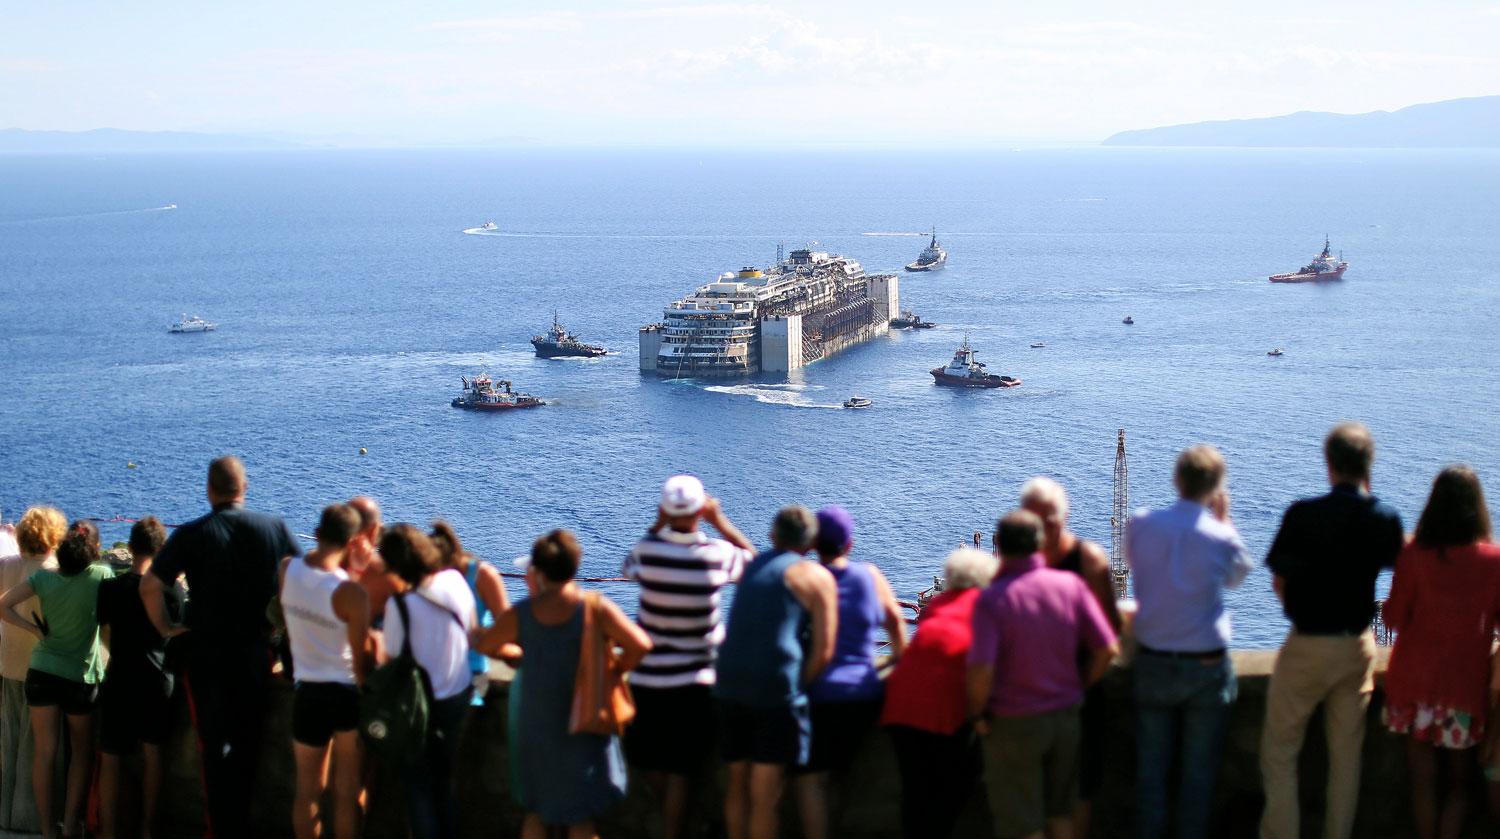 Tömegek várják a Costa Concordia érkezését. A hajó utolsó útjáról még több képet láthat ide kattintva.